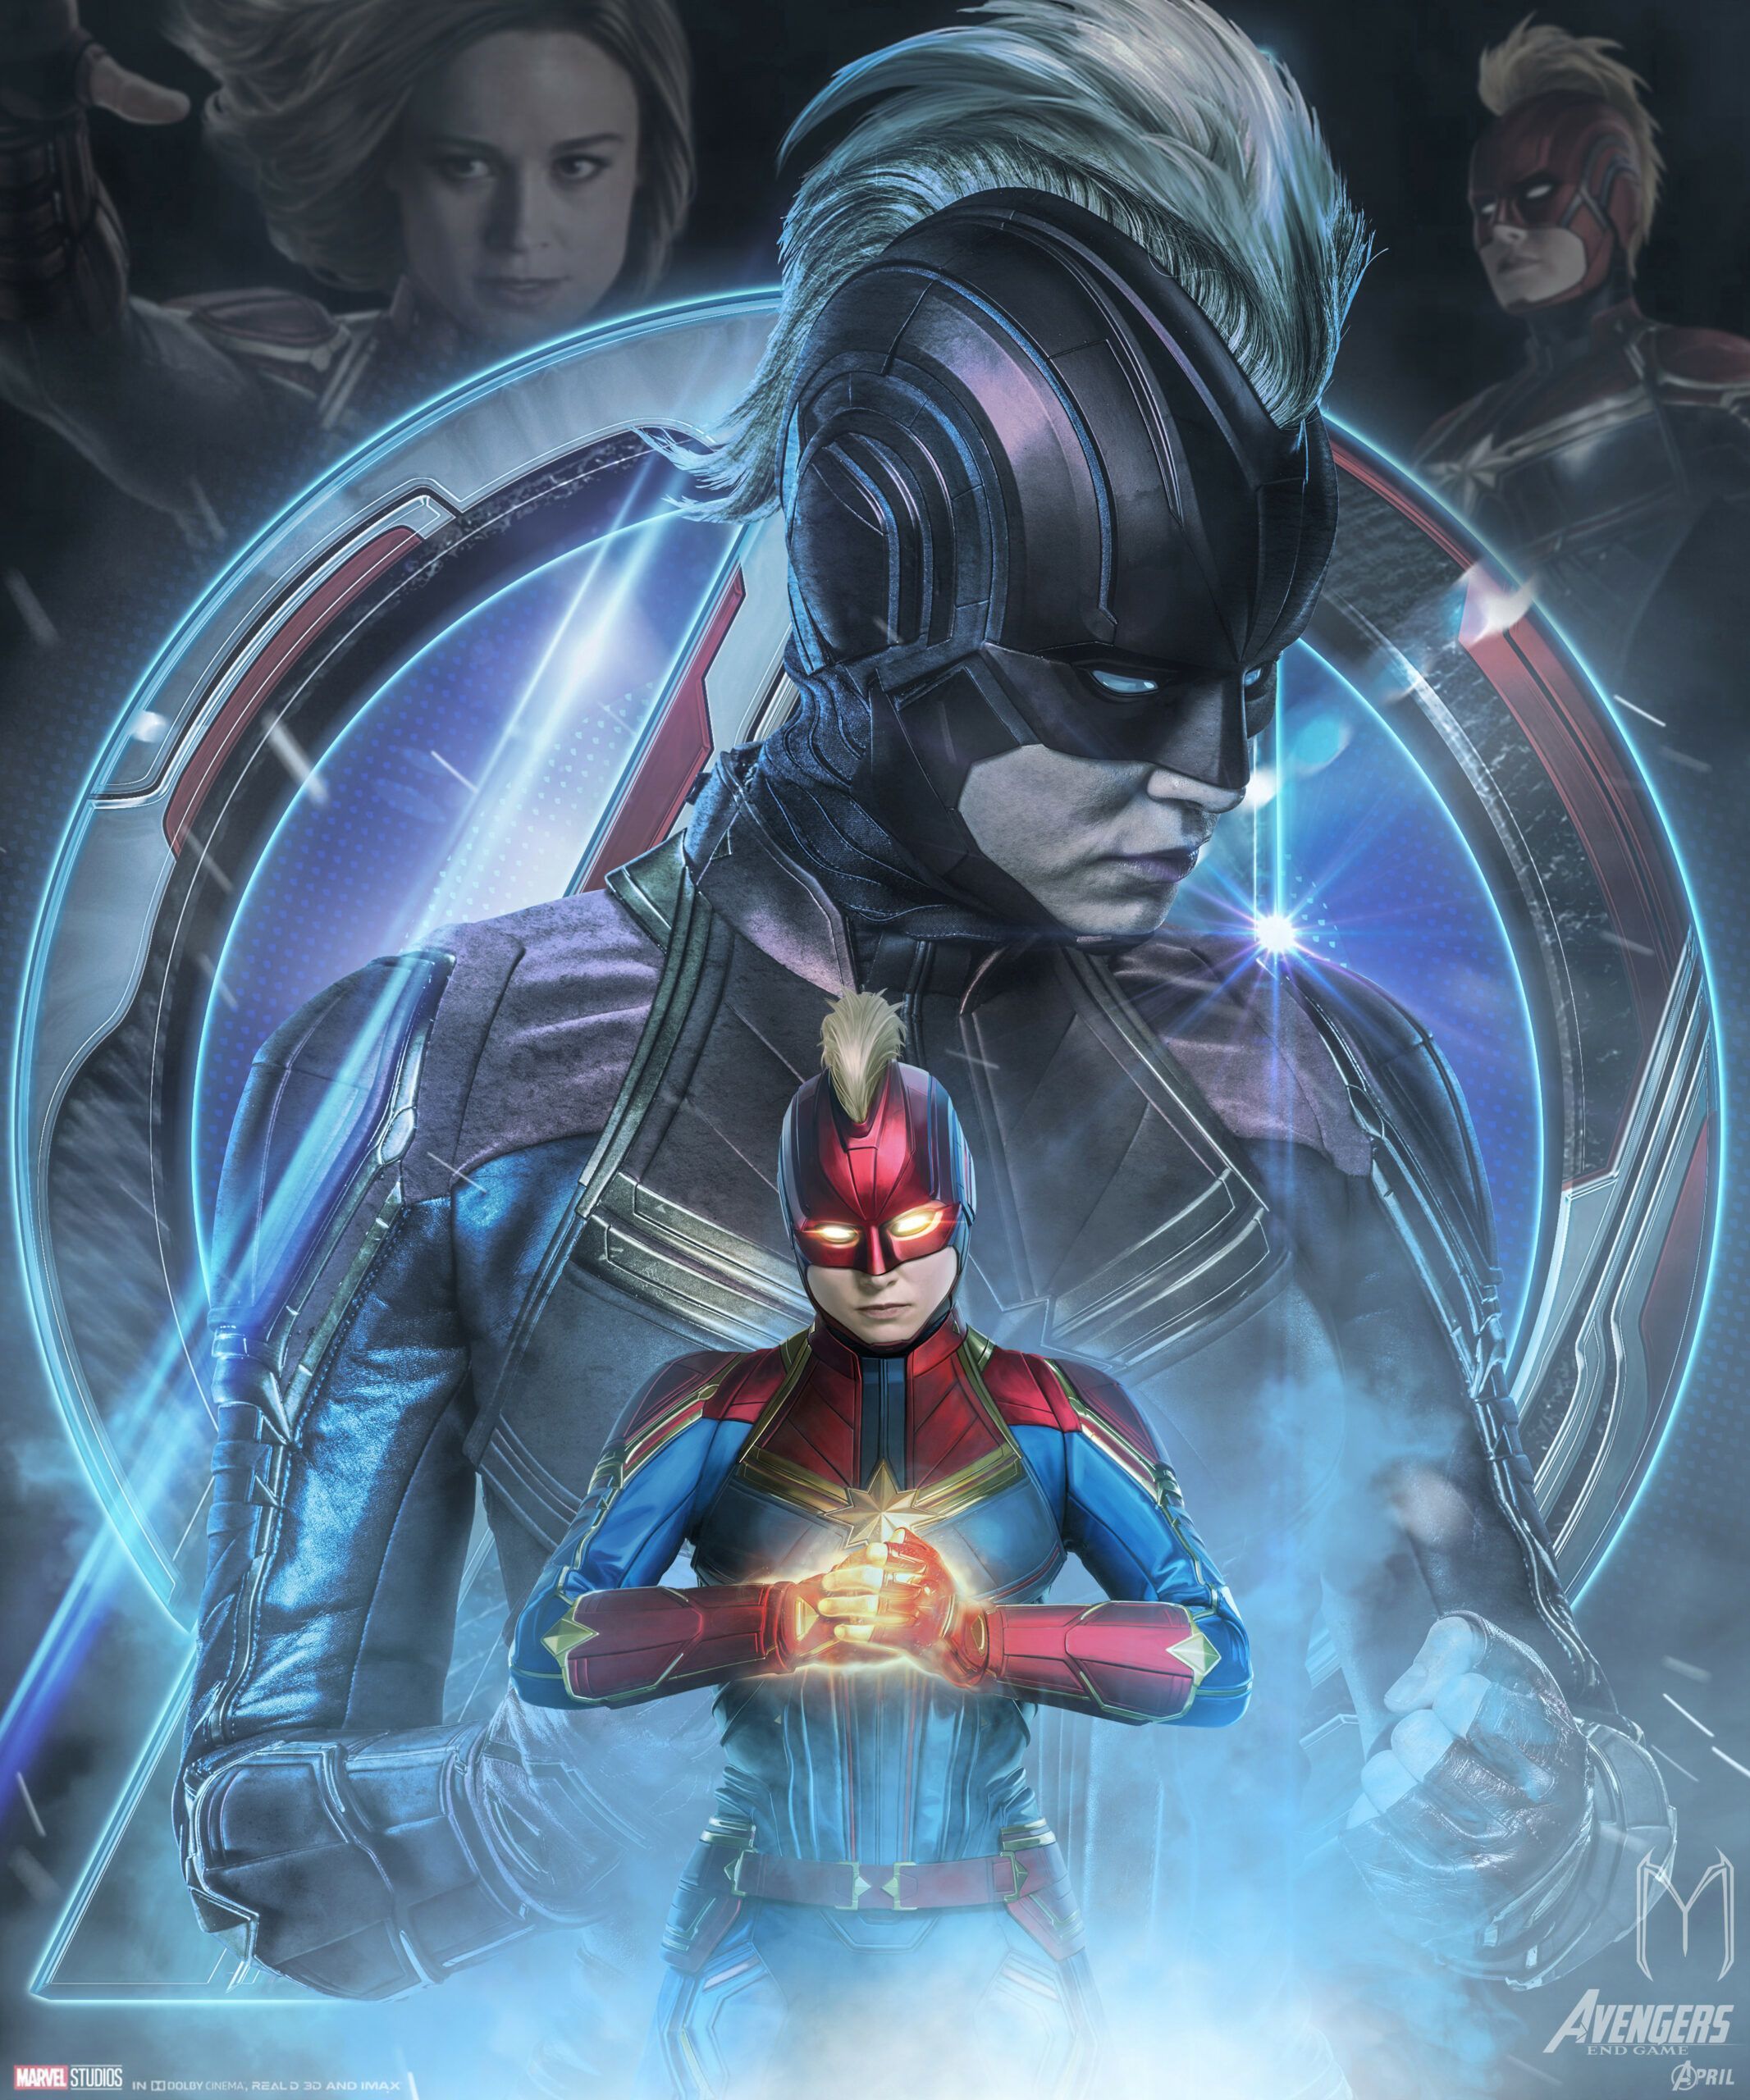 Beautiful Free Avengers Endgame Captain Marvel Poster Art. Marvel